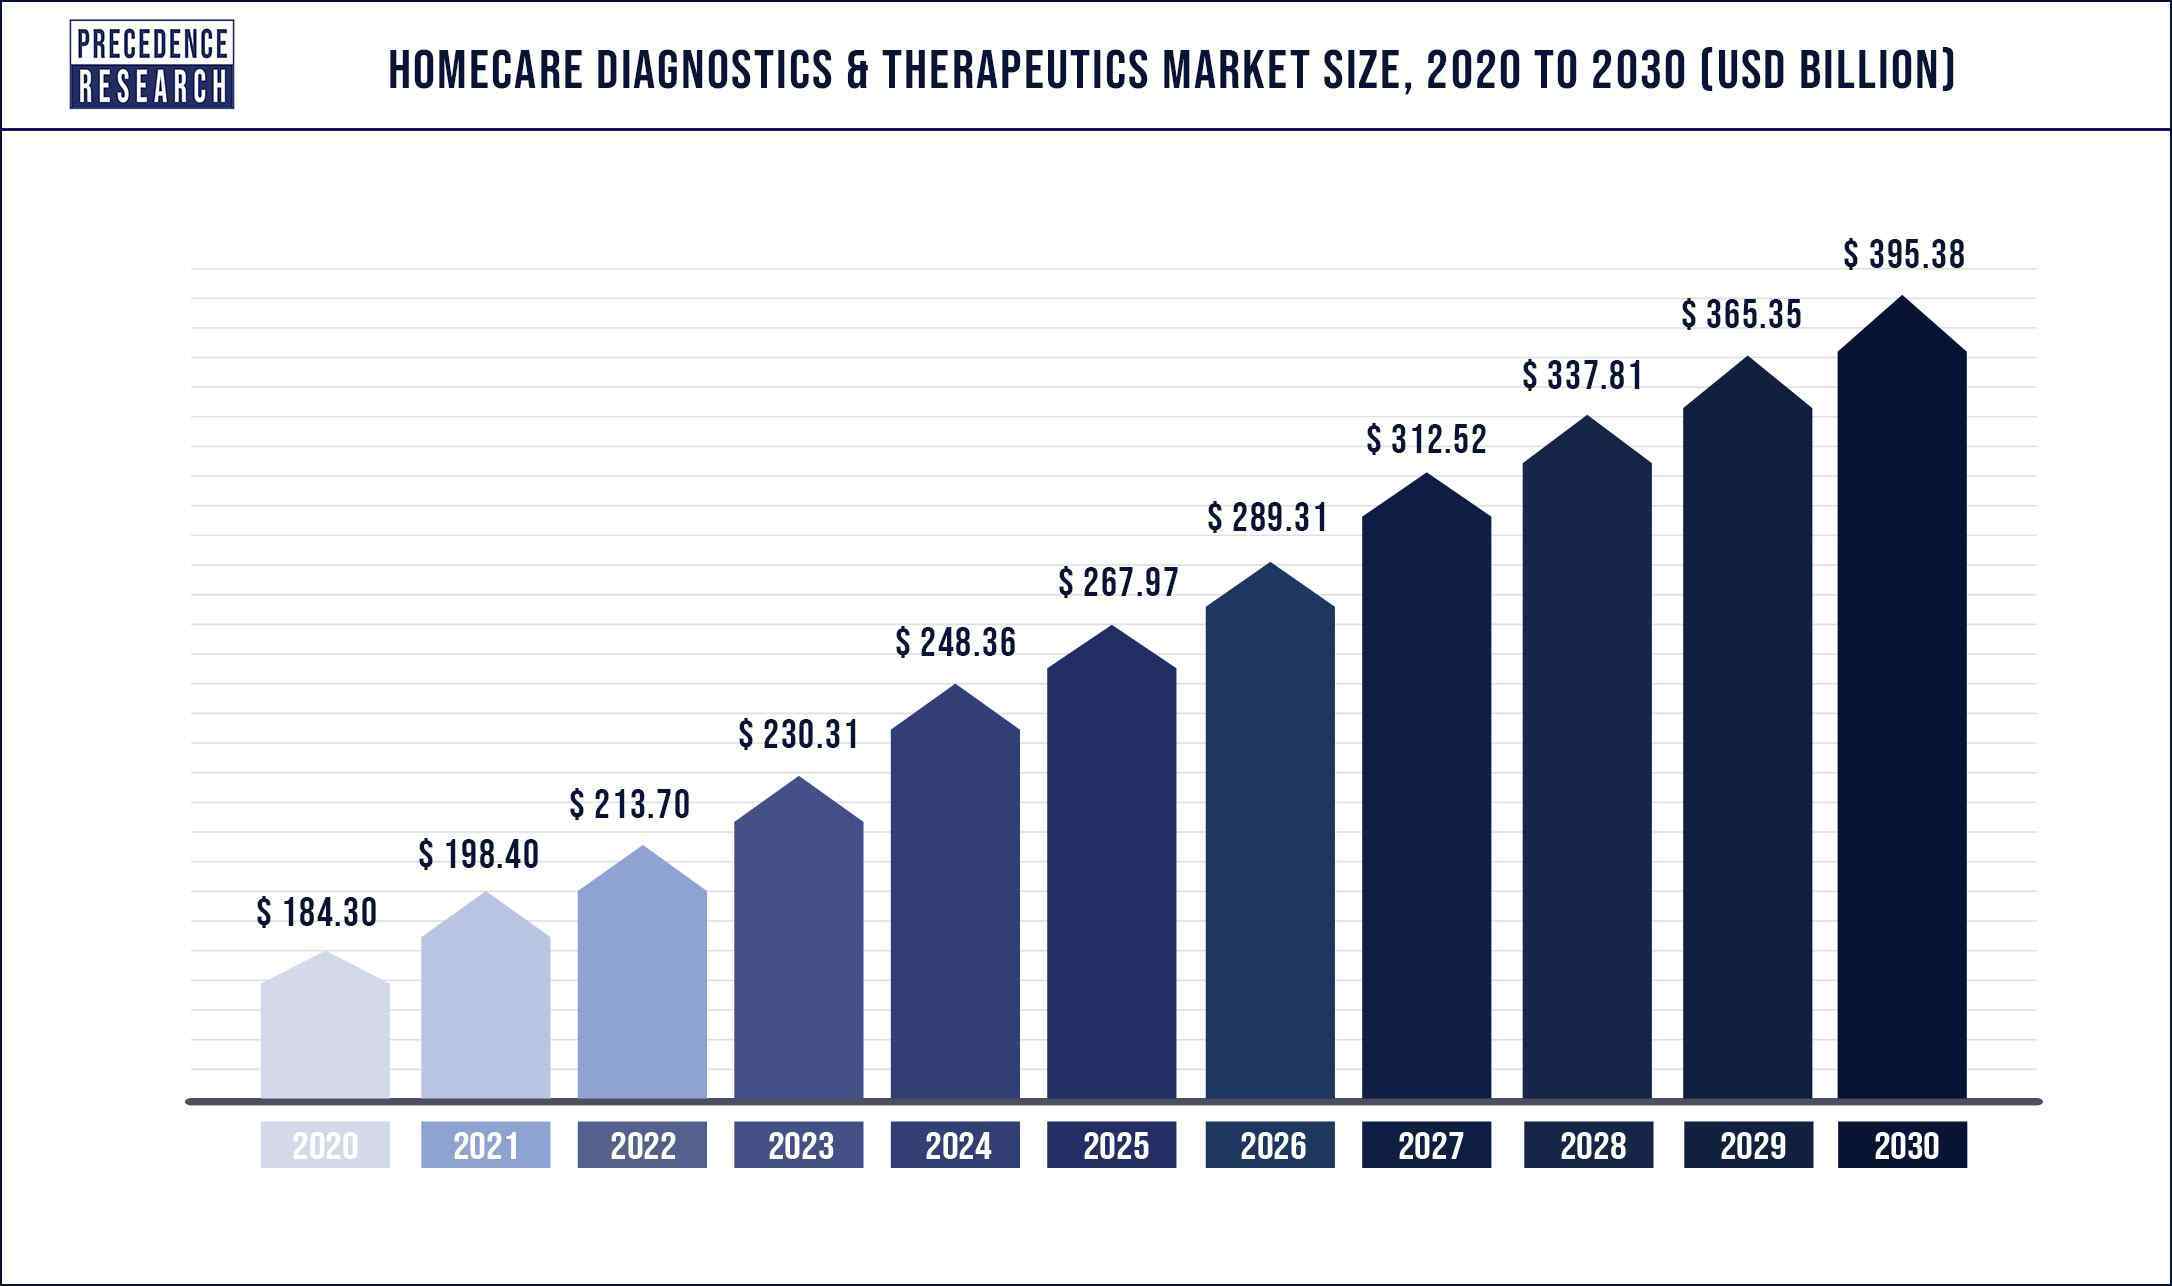 Homecare Diagnostics and Therapeutics Market Size 2020 to 2030